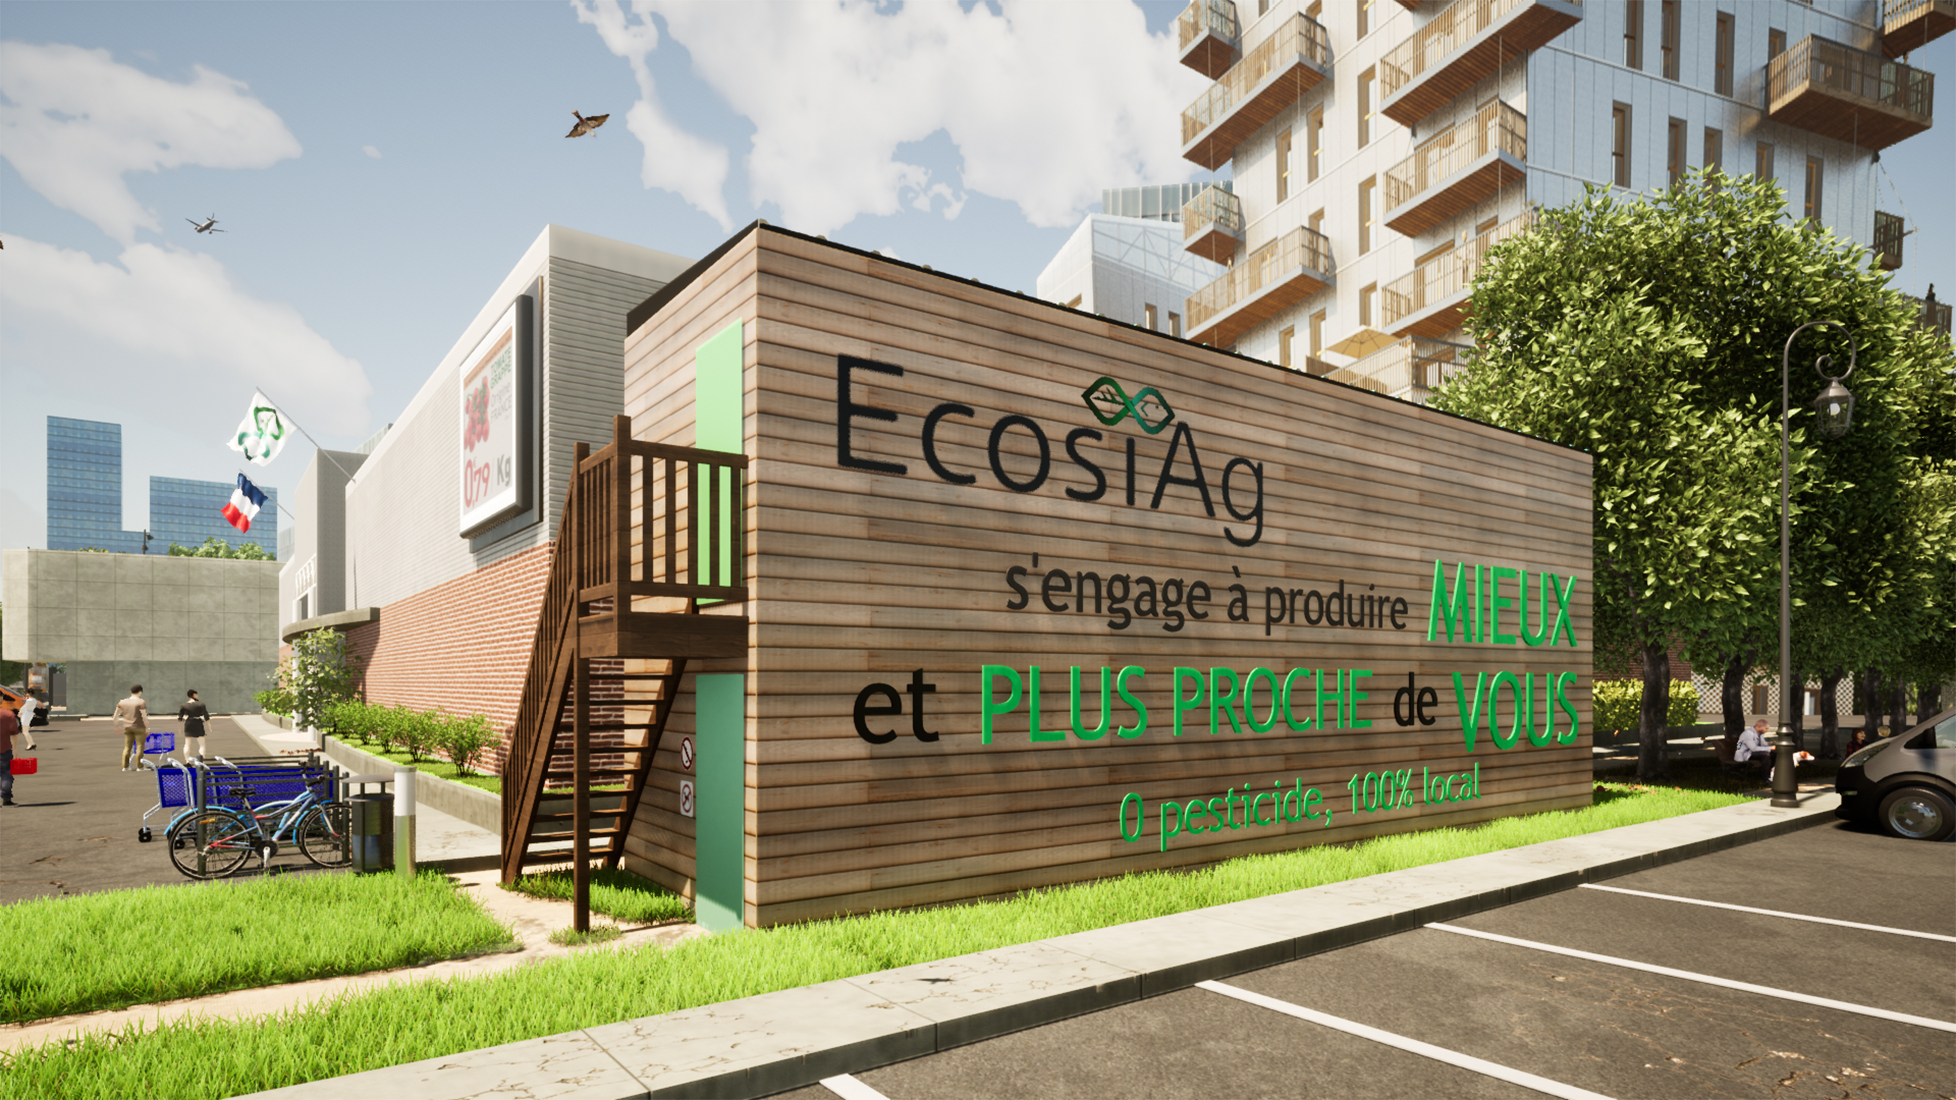 Les fermes containers Écosiag sont composées de deux containers empilés : une ferme de 30 m2 au sol équivaut à 150 m2 en culture traditionnelle, en termes de production.